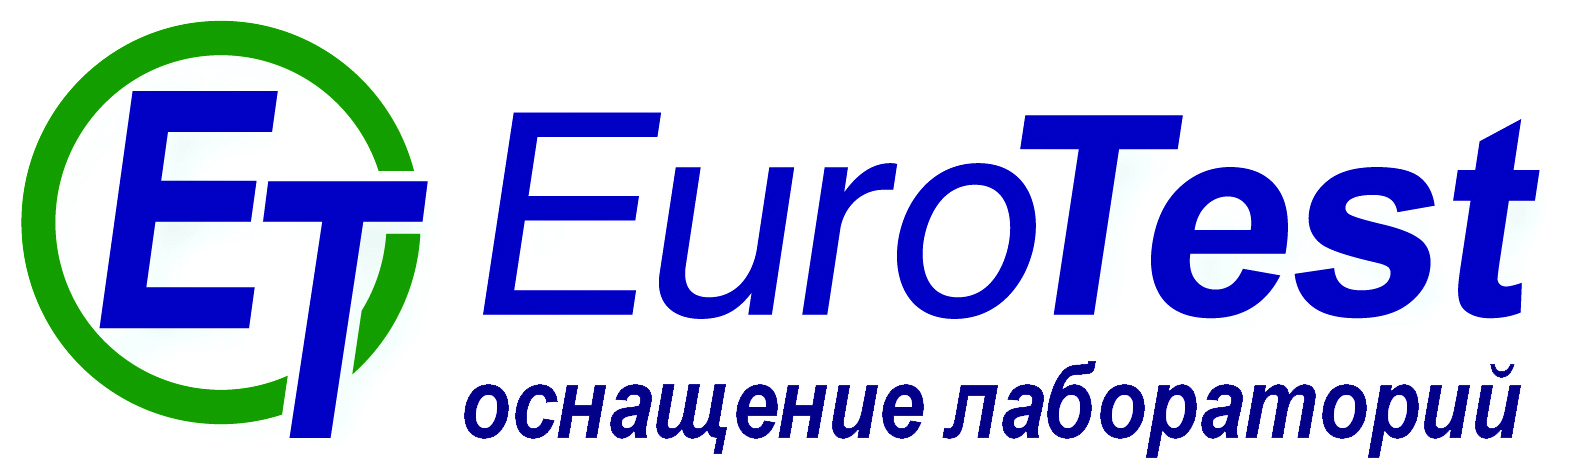 Logo EuroTest 2014 